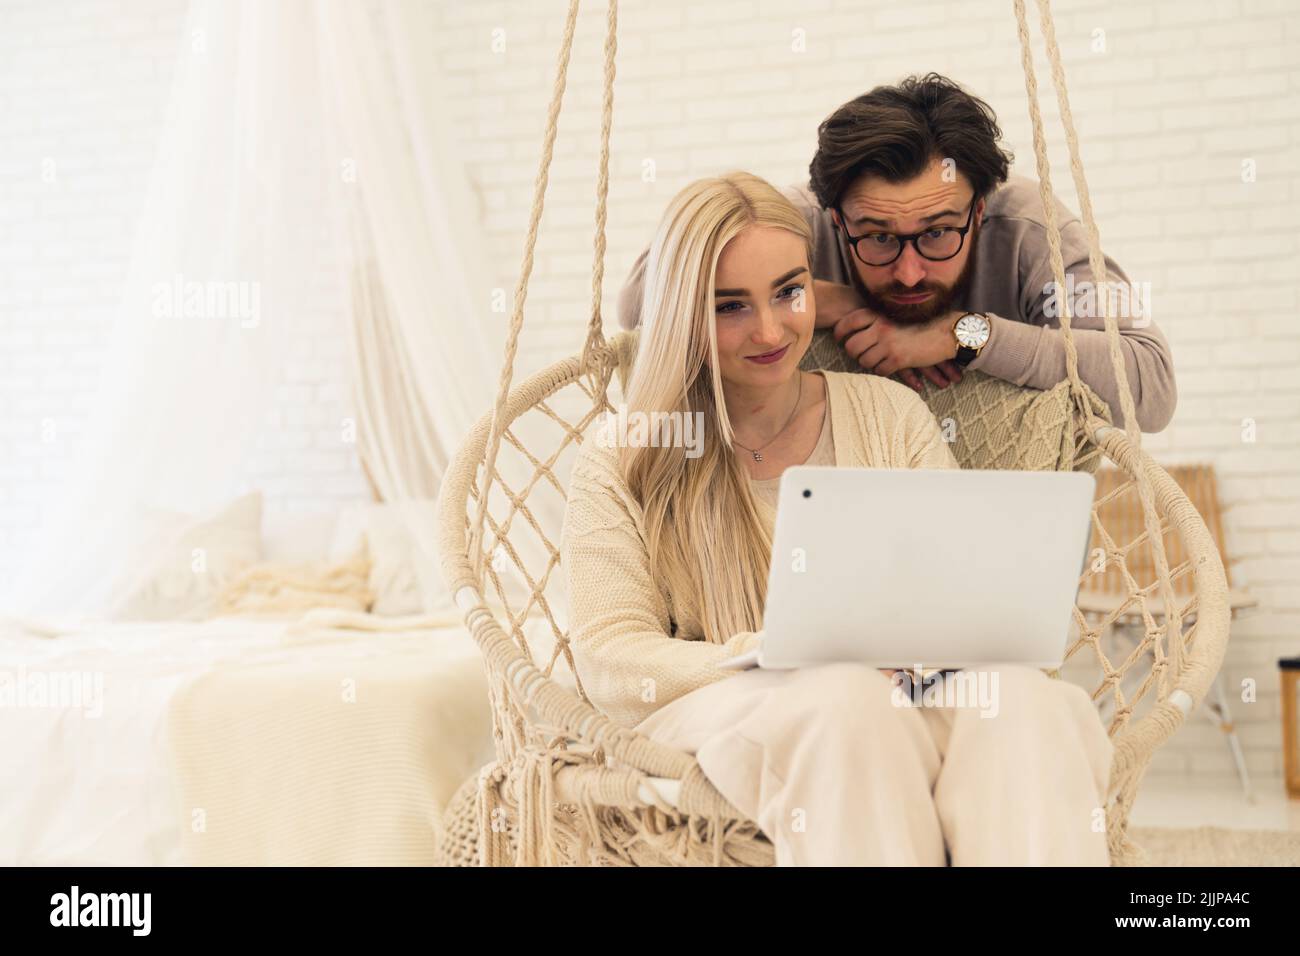 Kaukasisches Paar im Schlafzimmer. Dunkelhaariger Mann mit Bart und Brille, der seine blonde Freundin mit einem Laptop-Computer im Hängesessel beobachtet. Innenaufnahme. Hochwertige Fotos Stockfoto